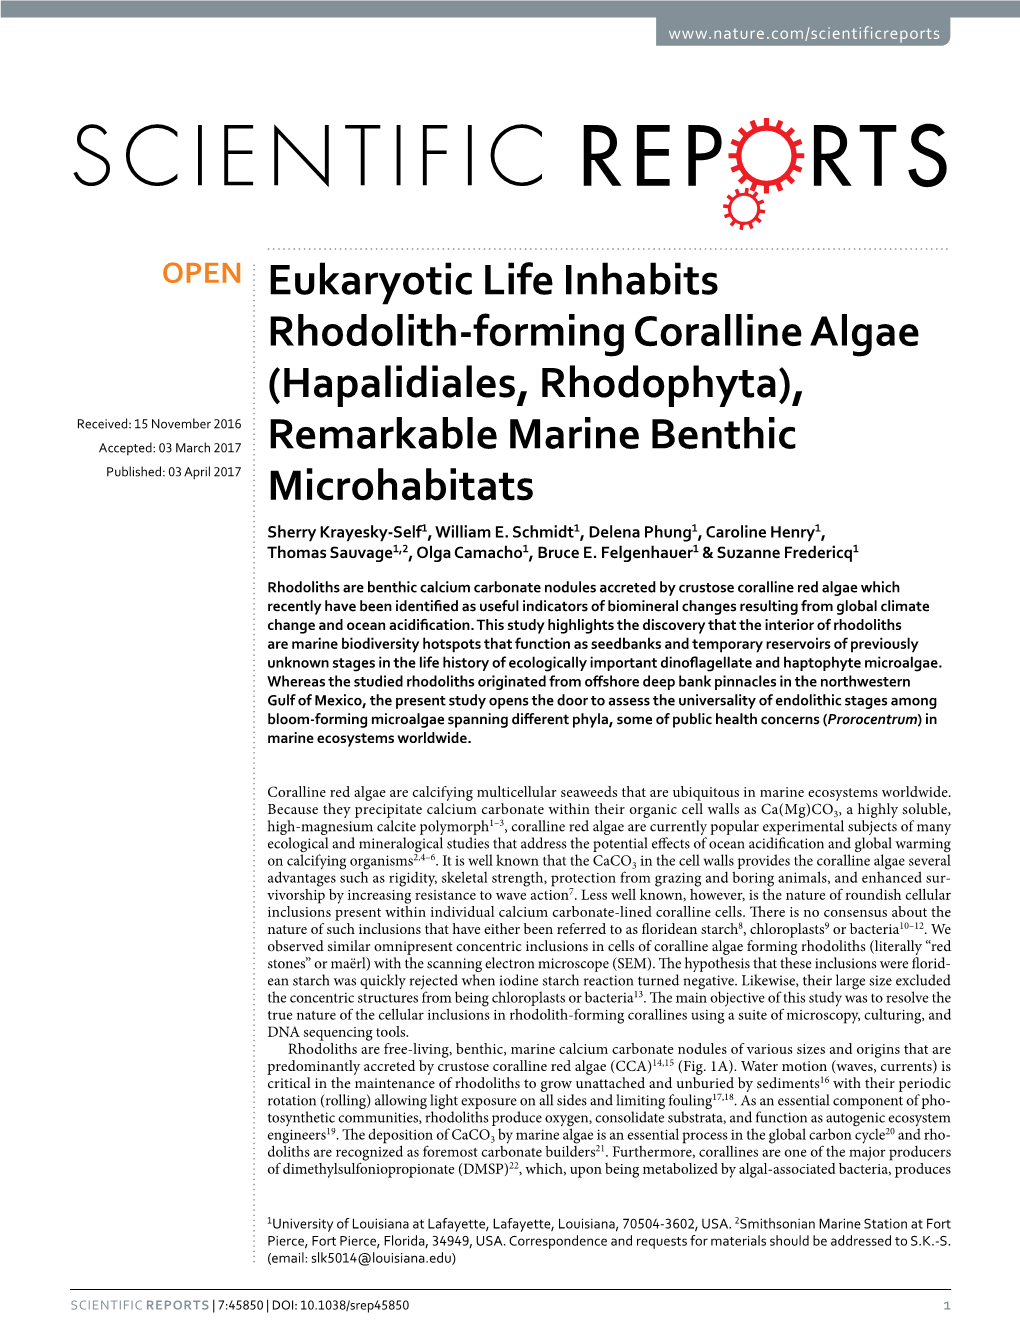 Eukaryotic Life Inhabits Rhodolith